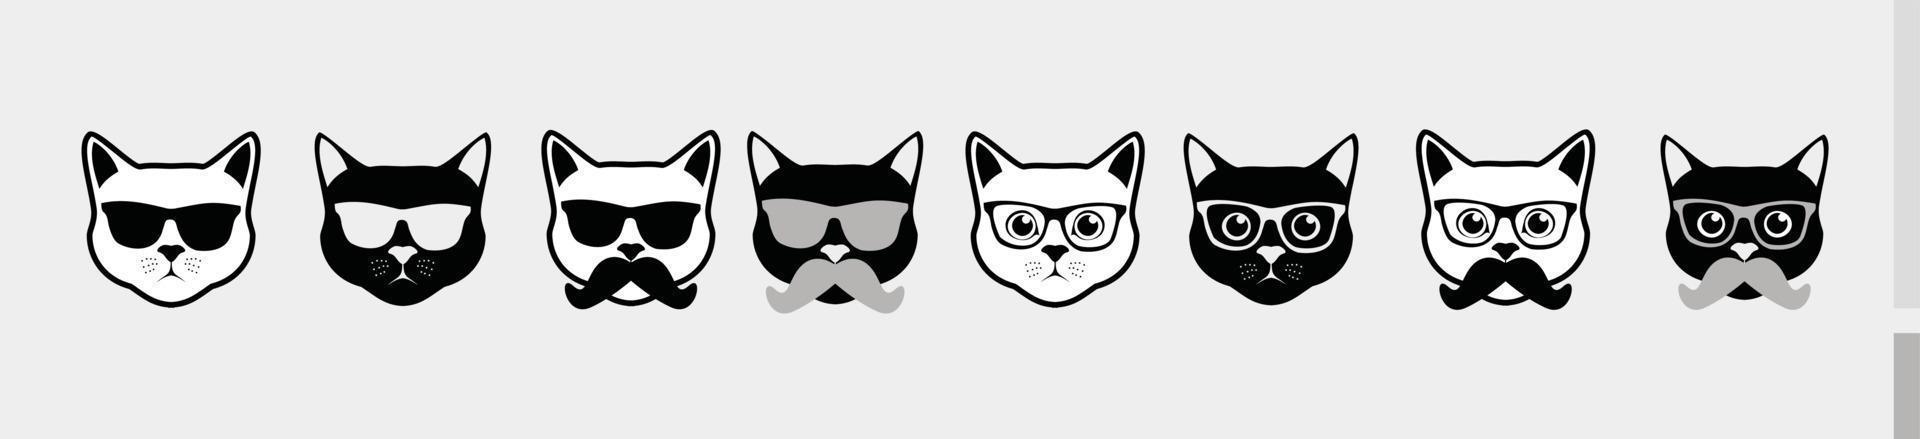 Katze Gesicht Kopf Schwarz-Weiß-Set - Silhouette Cartoons Emoticon-Symbol isoliert auf weißem Hintergrund vektor